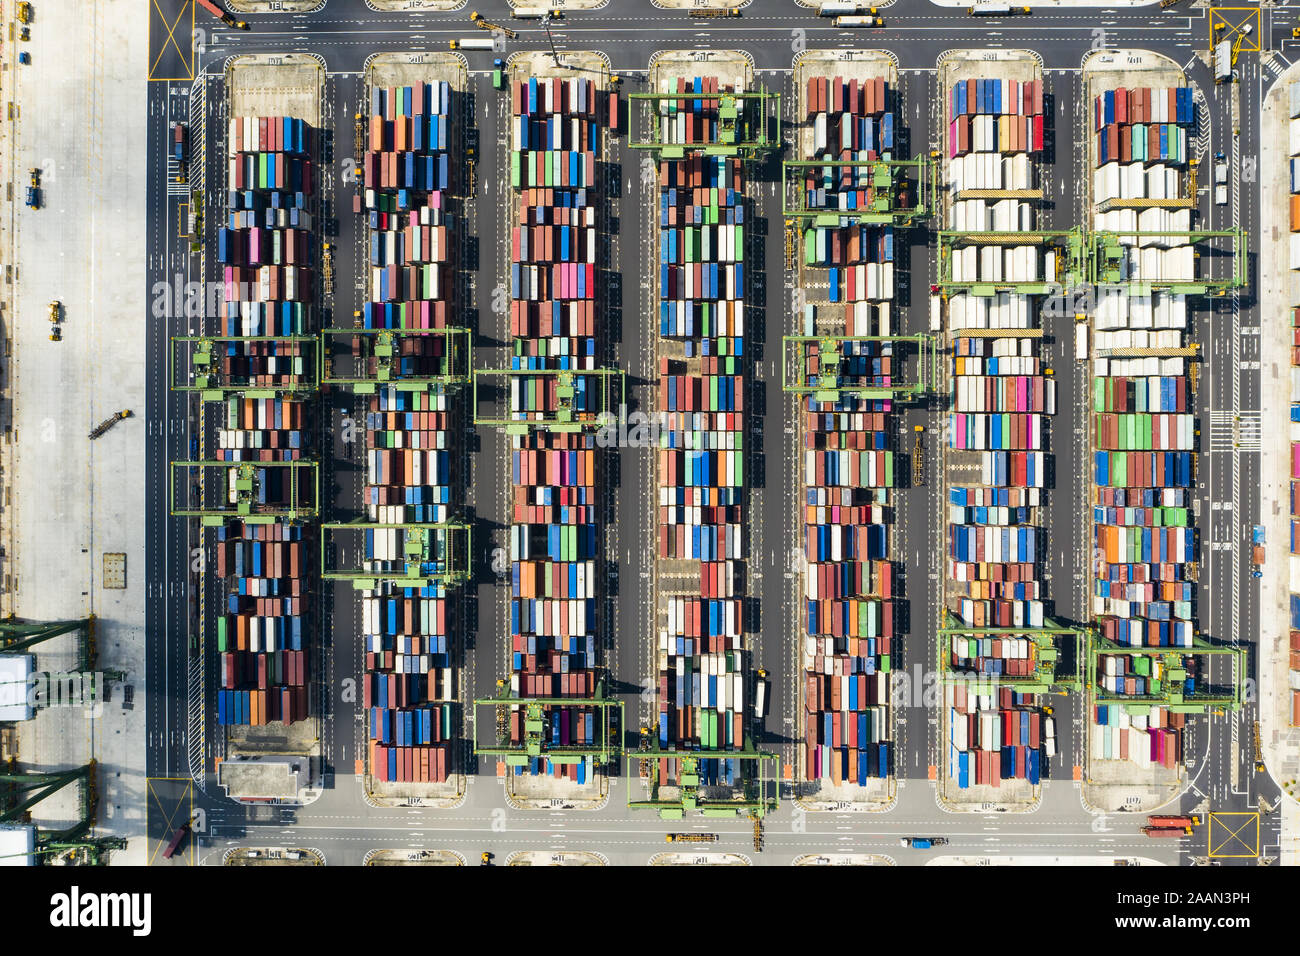 Vista da sopra, splendida vista aerea del porto di Singapore con migliaia di contenitori colorati pronti per essere sul carico di navi. Foto Stock